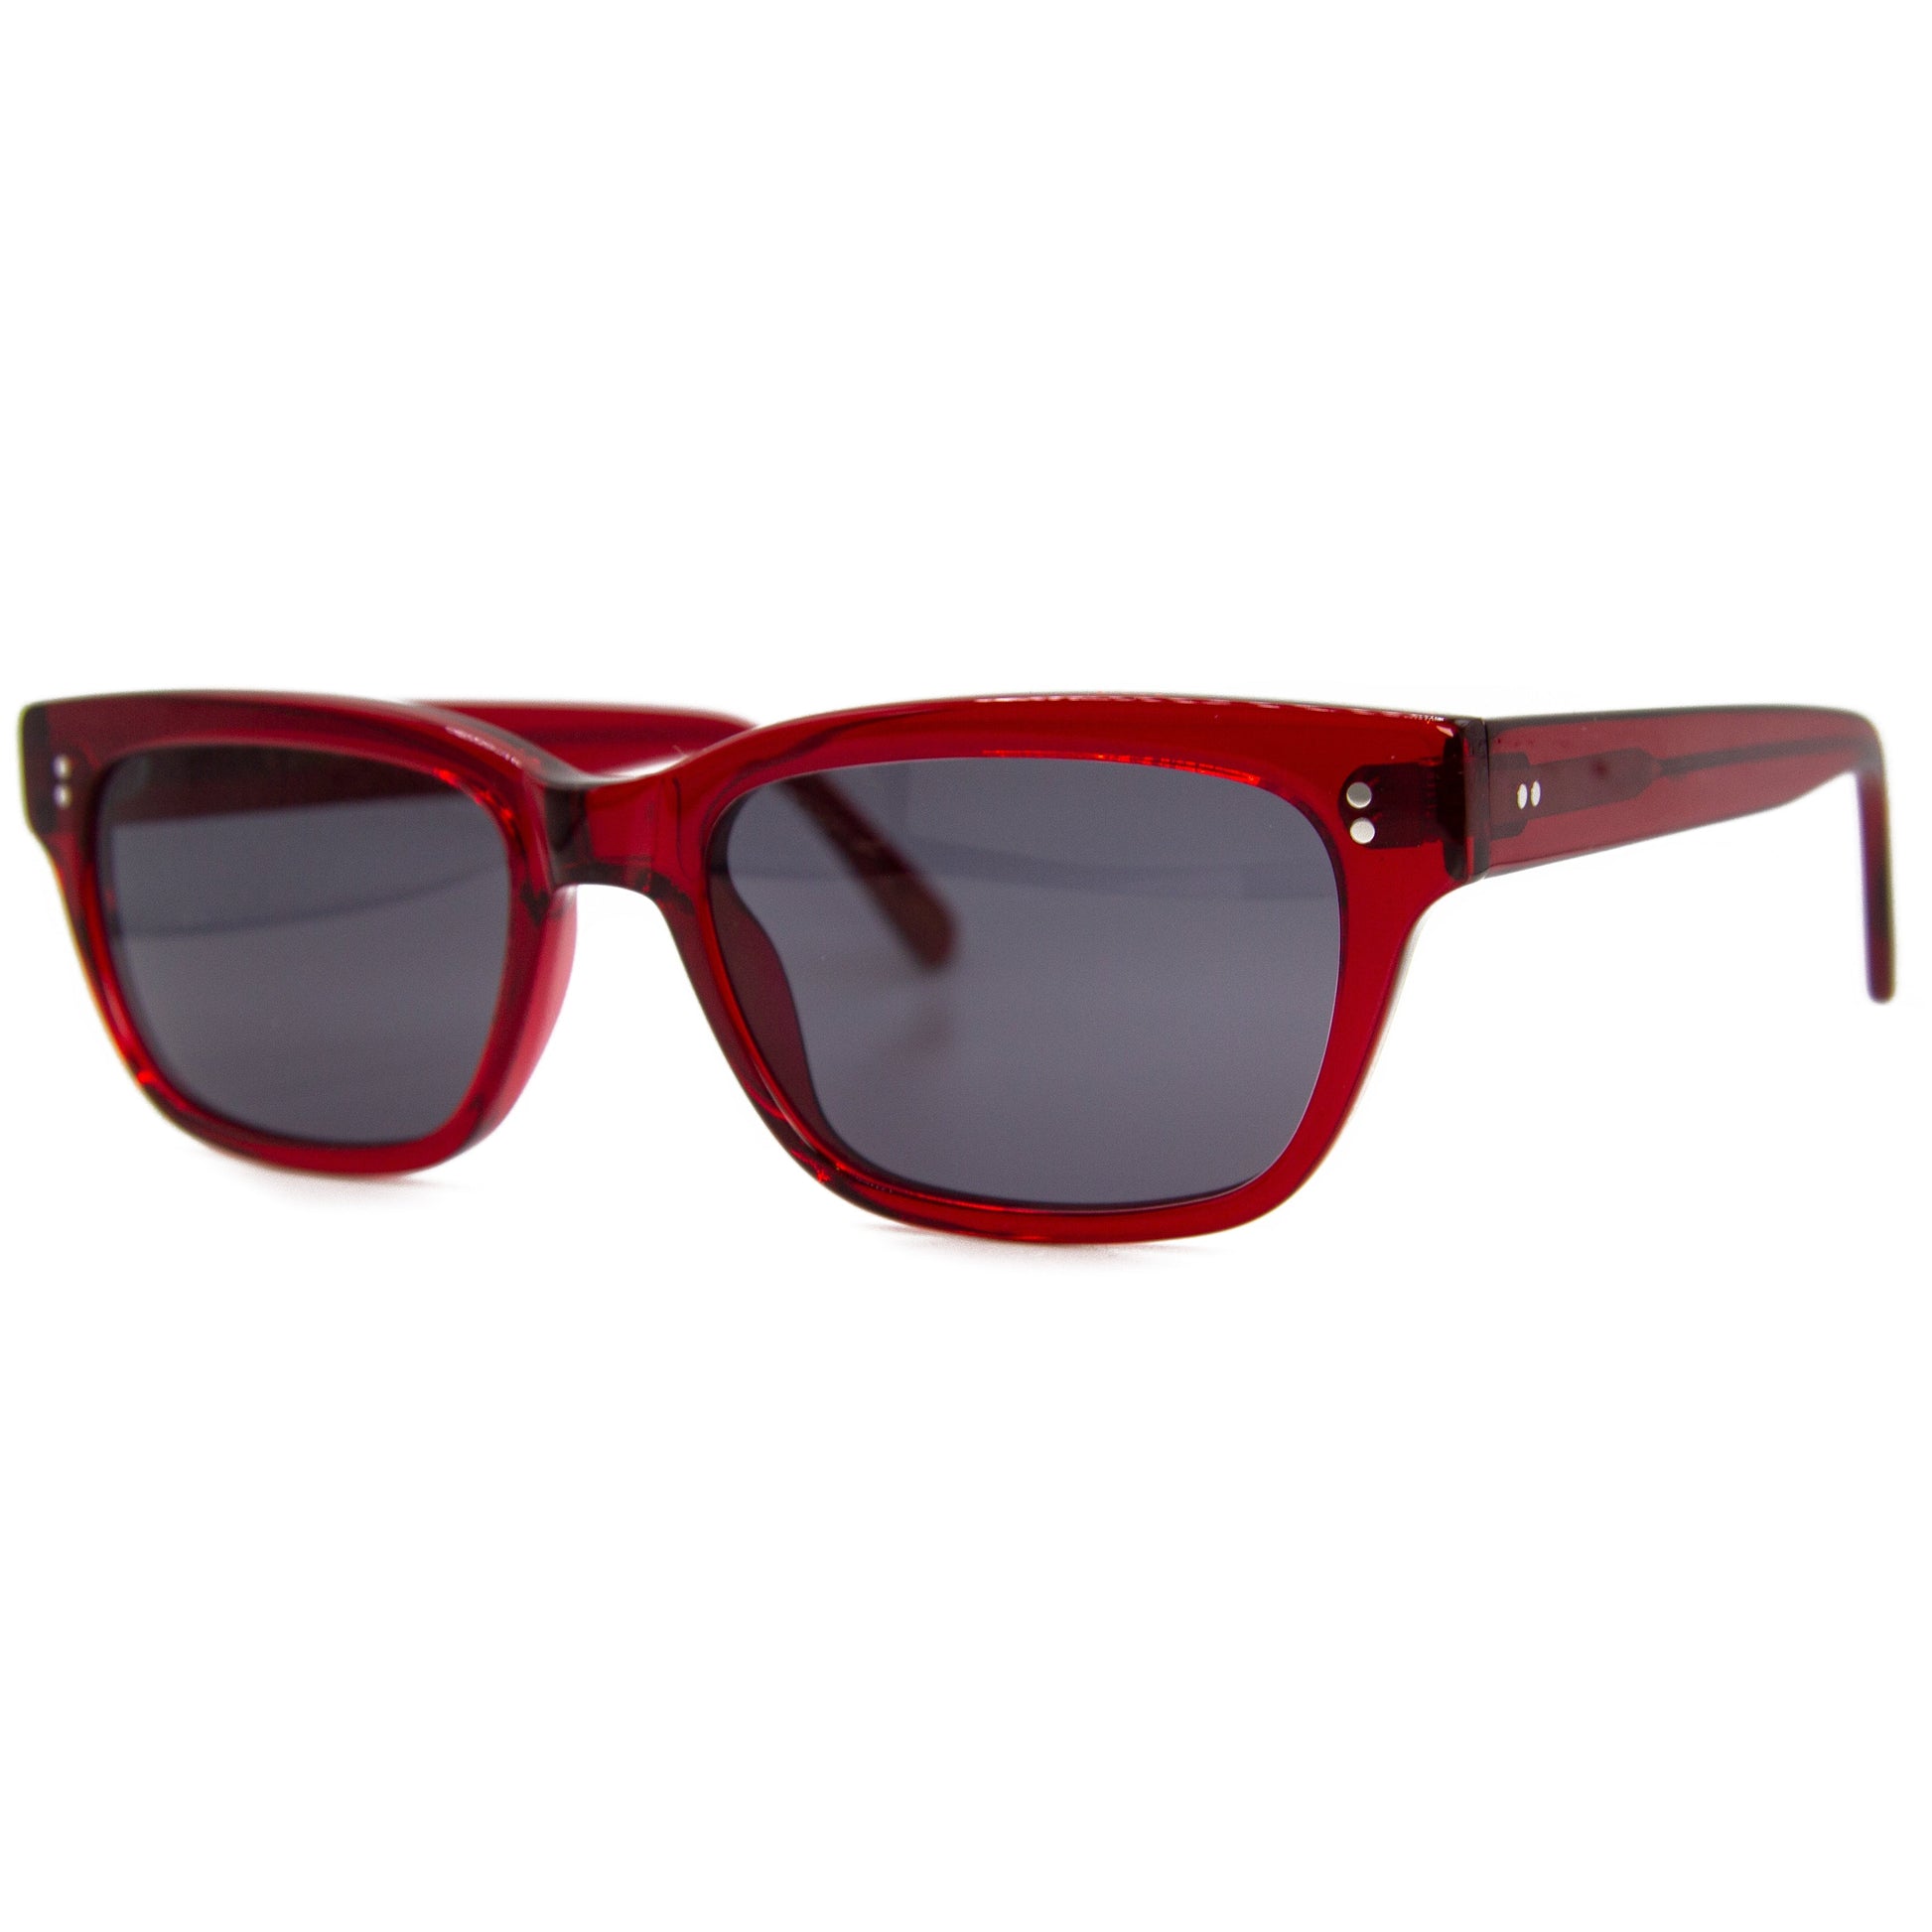 Chunky Rectangular Red Sunglasses